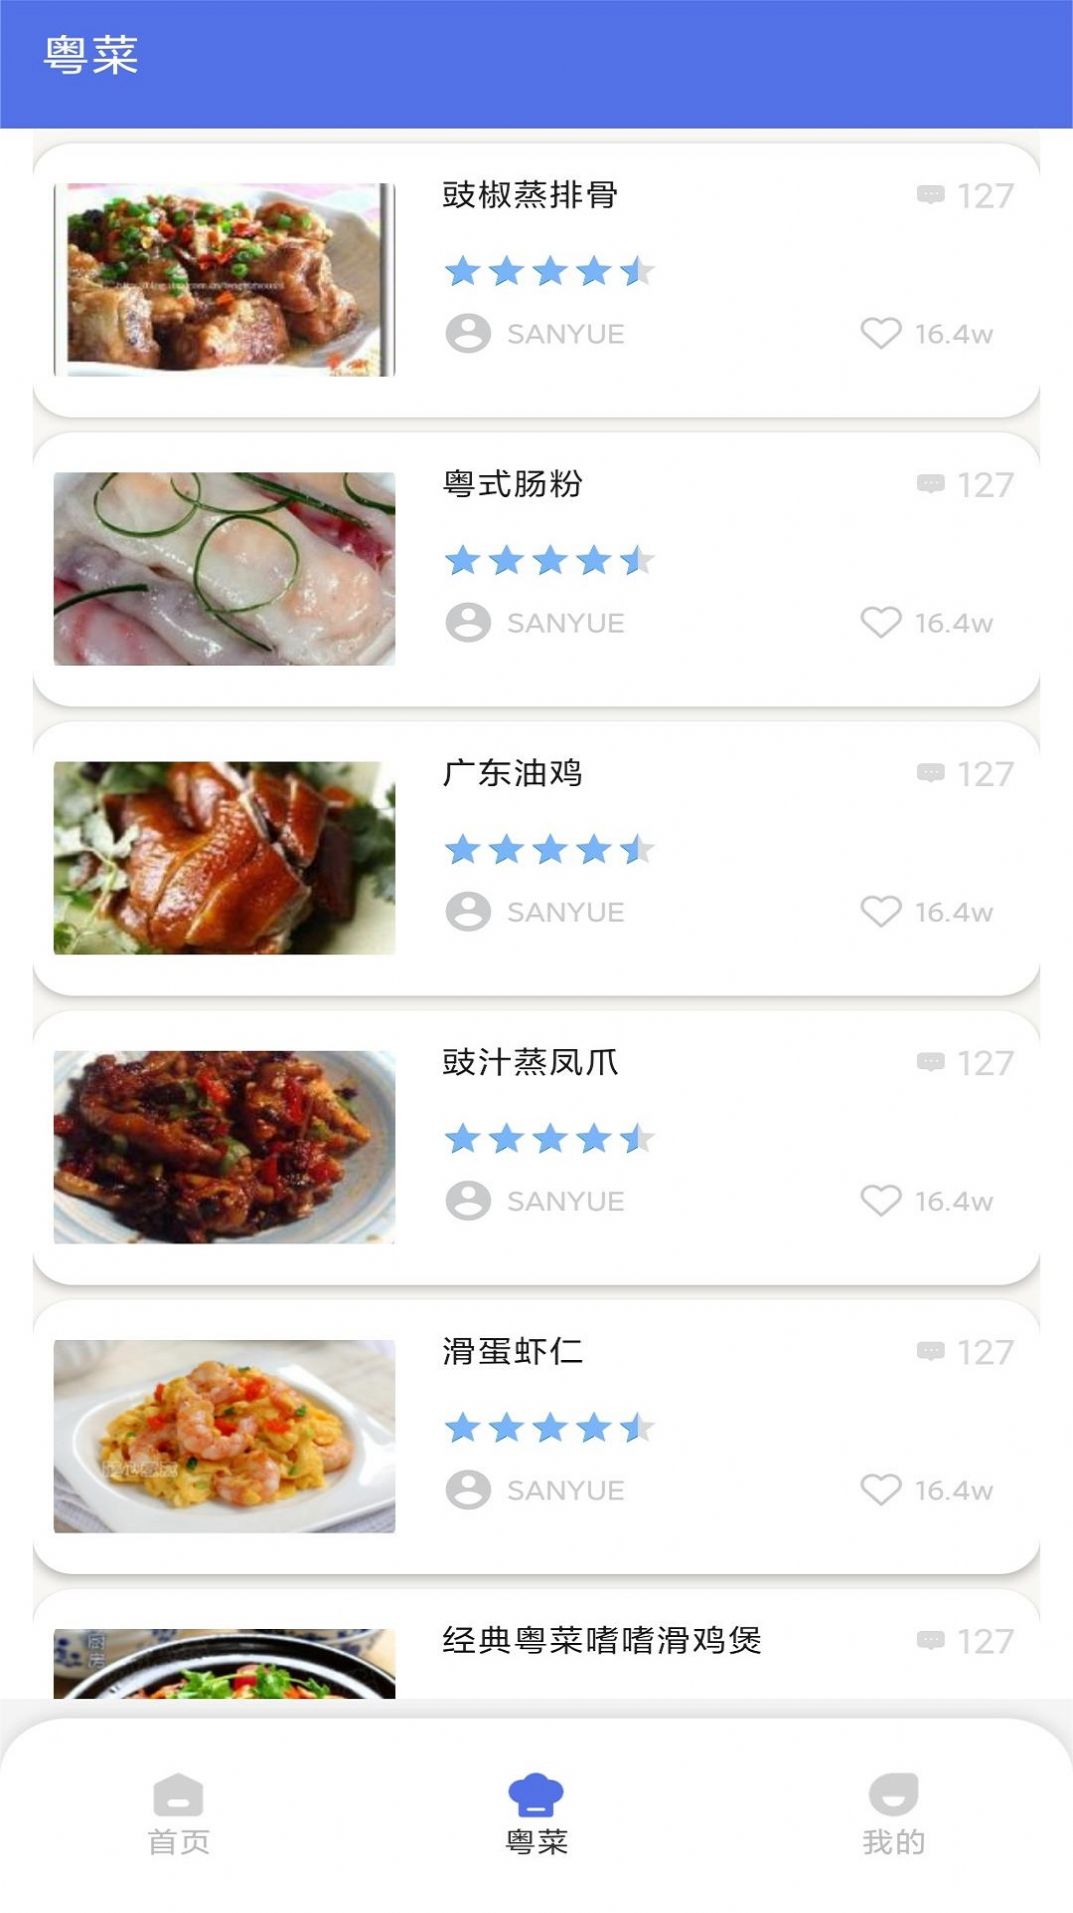 粤通行app图3